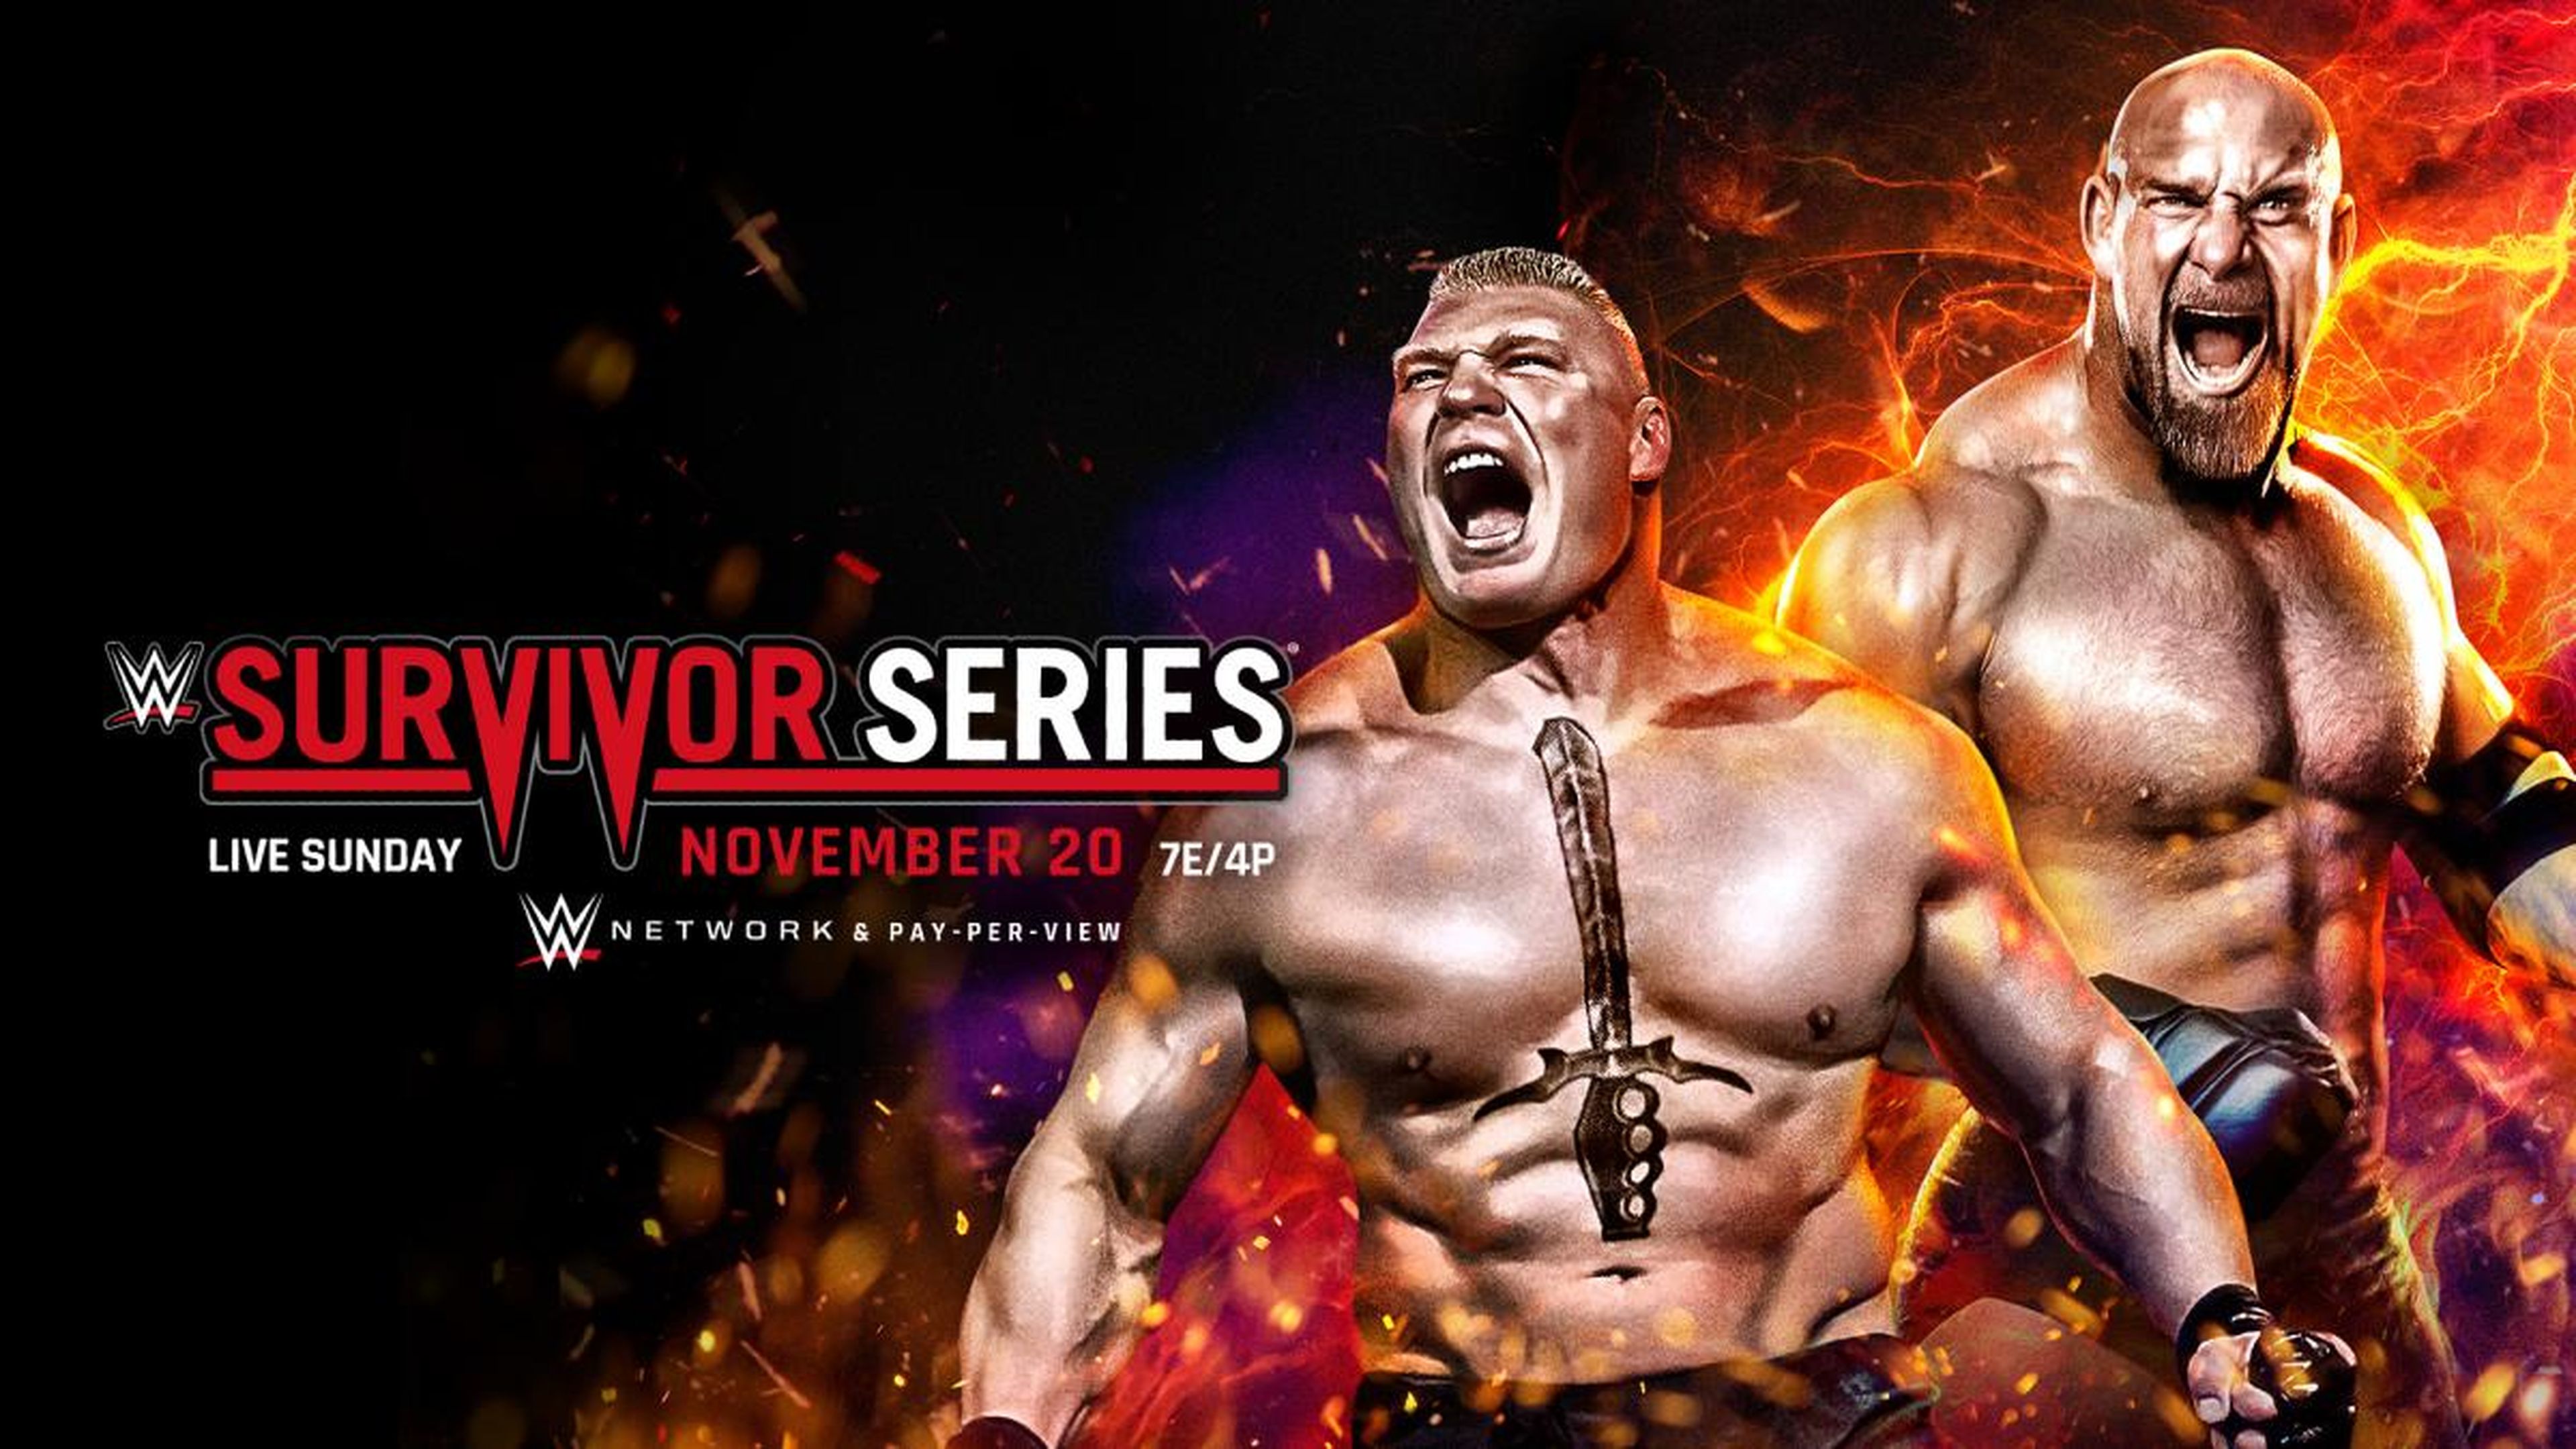 WWE - Resultados de Survivor Series, Lesnar vs Goldberg y Raw vs SmackDown